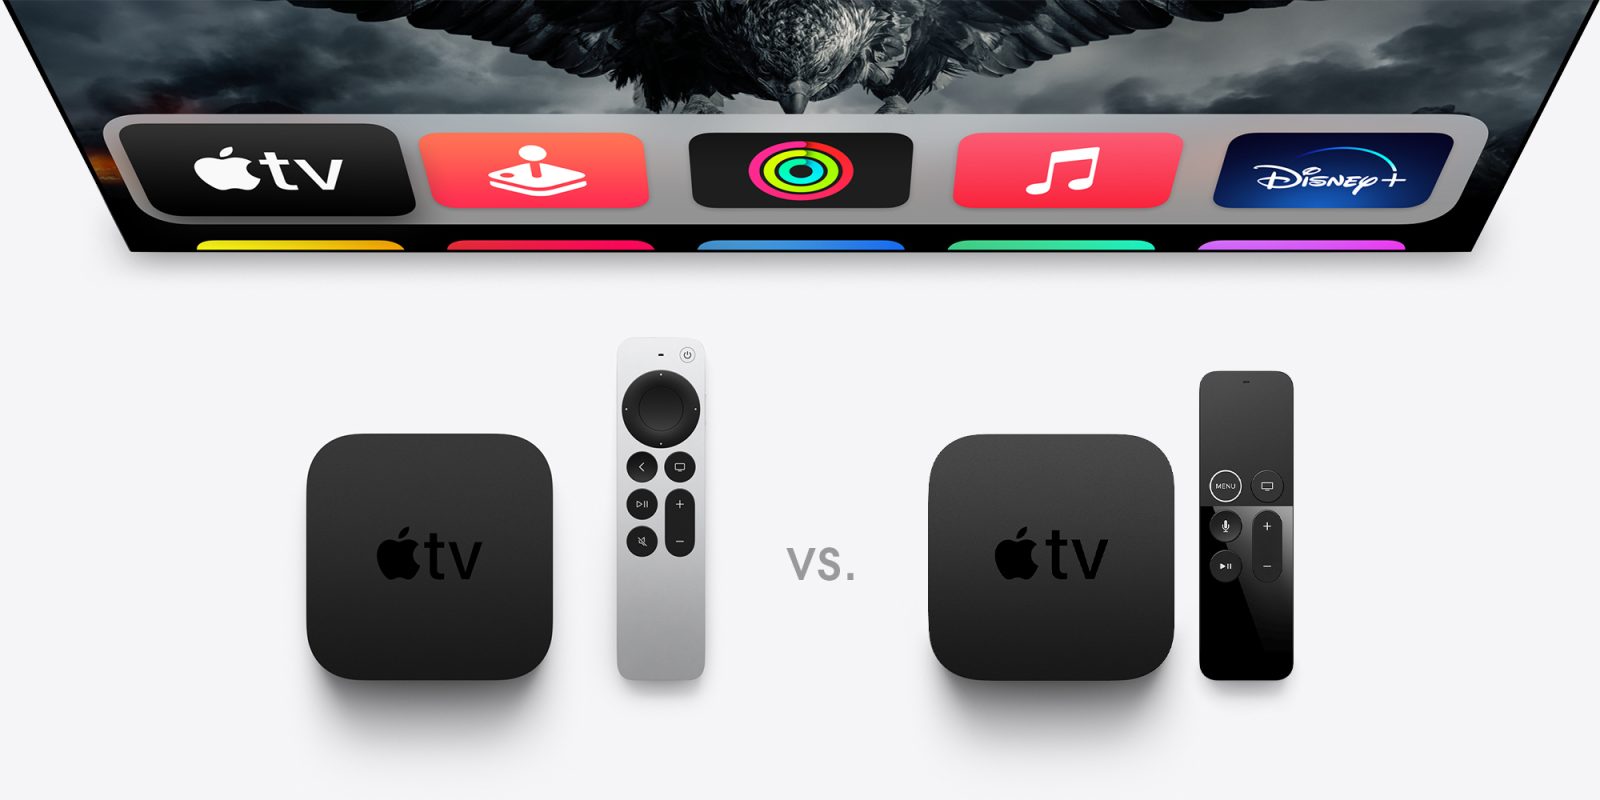 Apple TV 4K vs old TV 4K: Specs, features, price - 9to5Mac